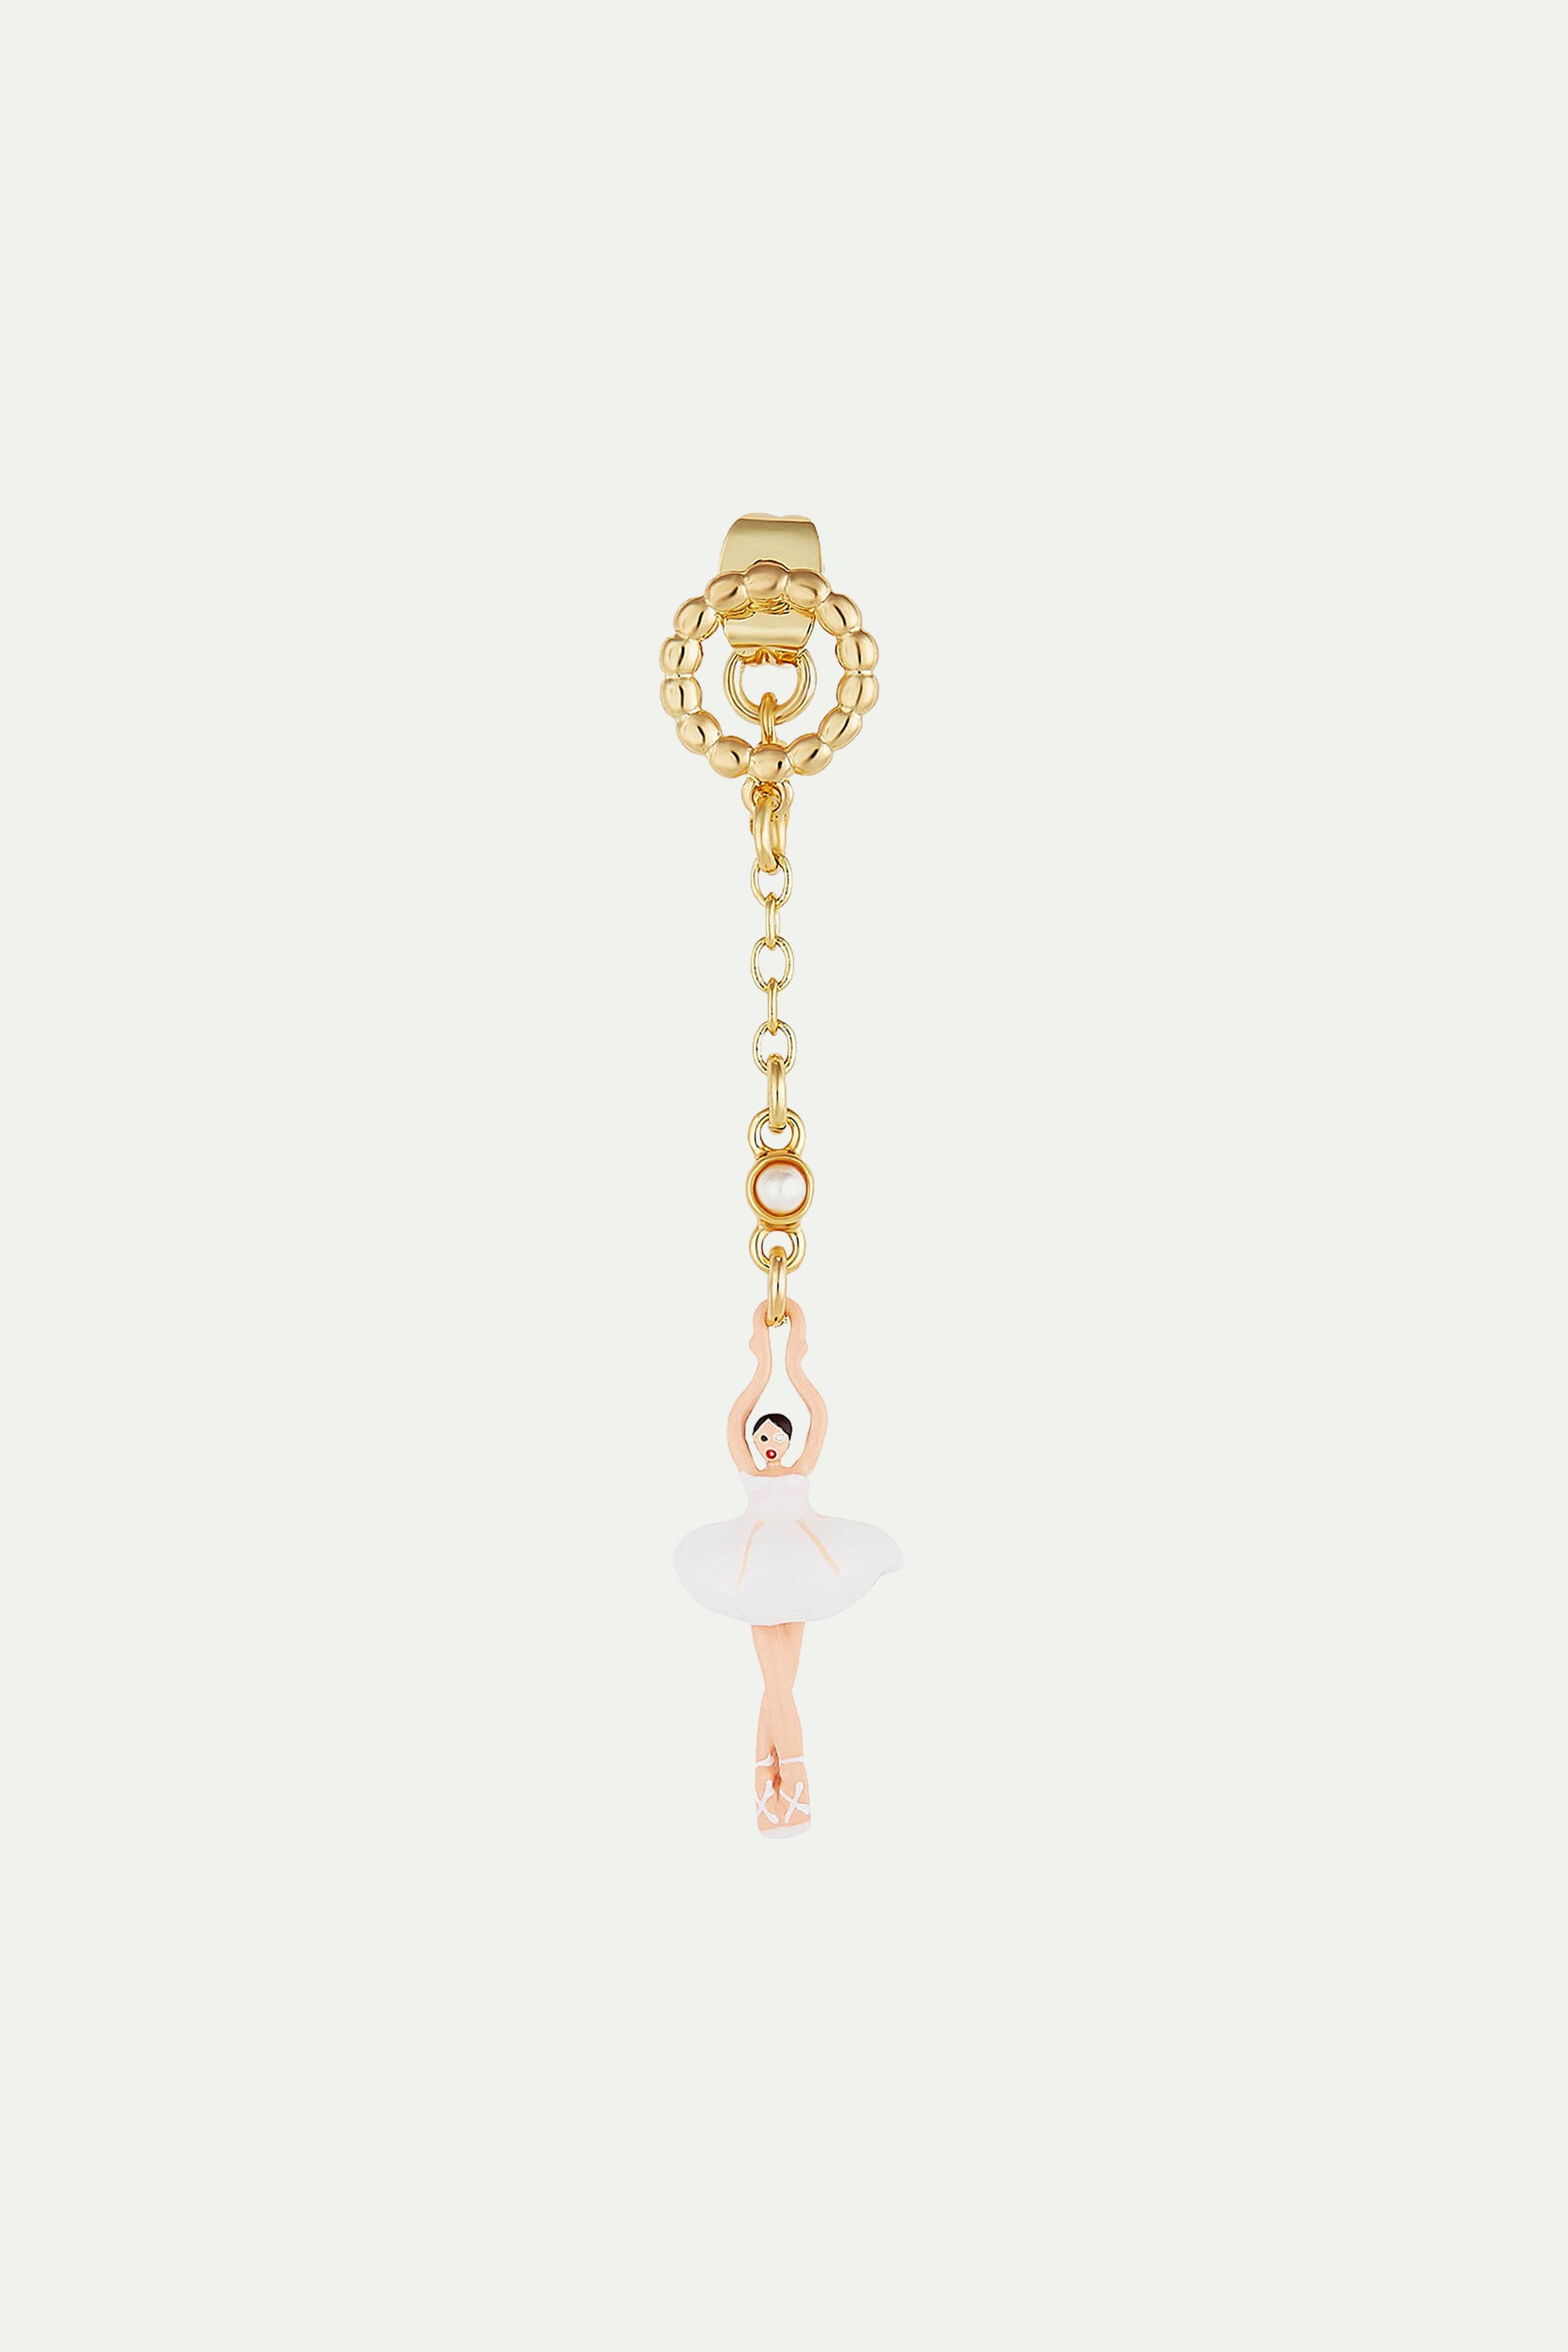 Beaded ring and white tutu ballerina post earrings